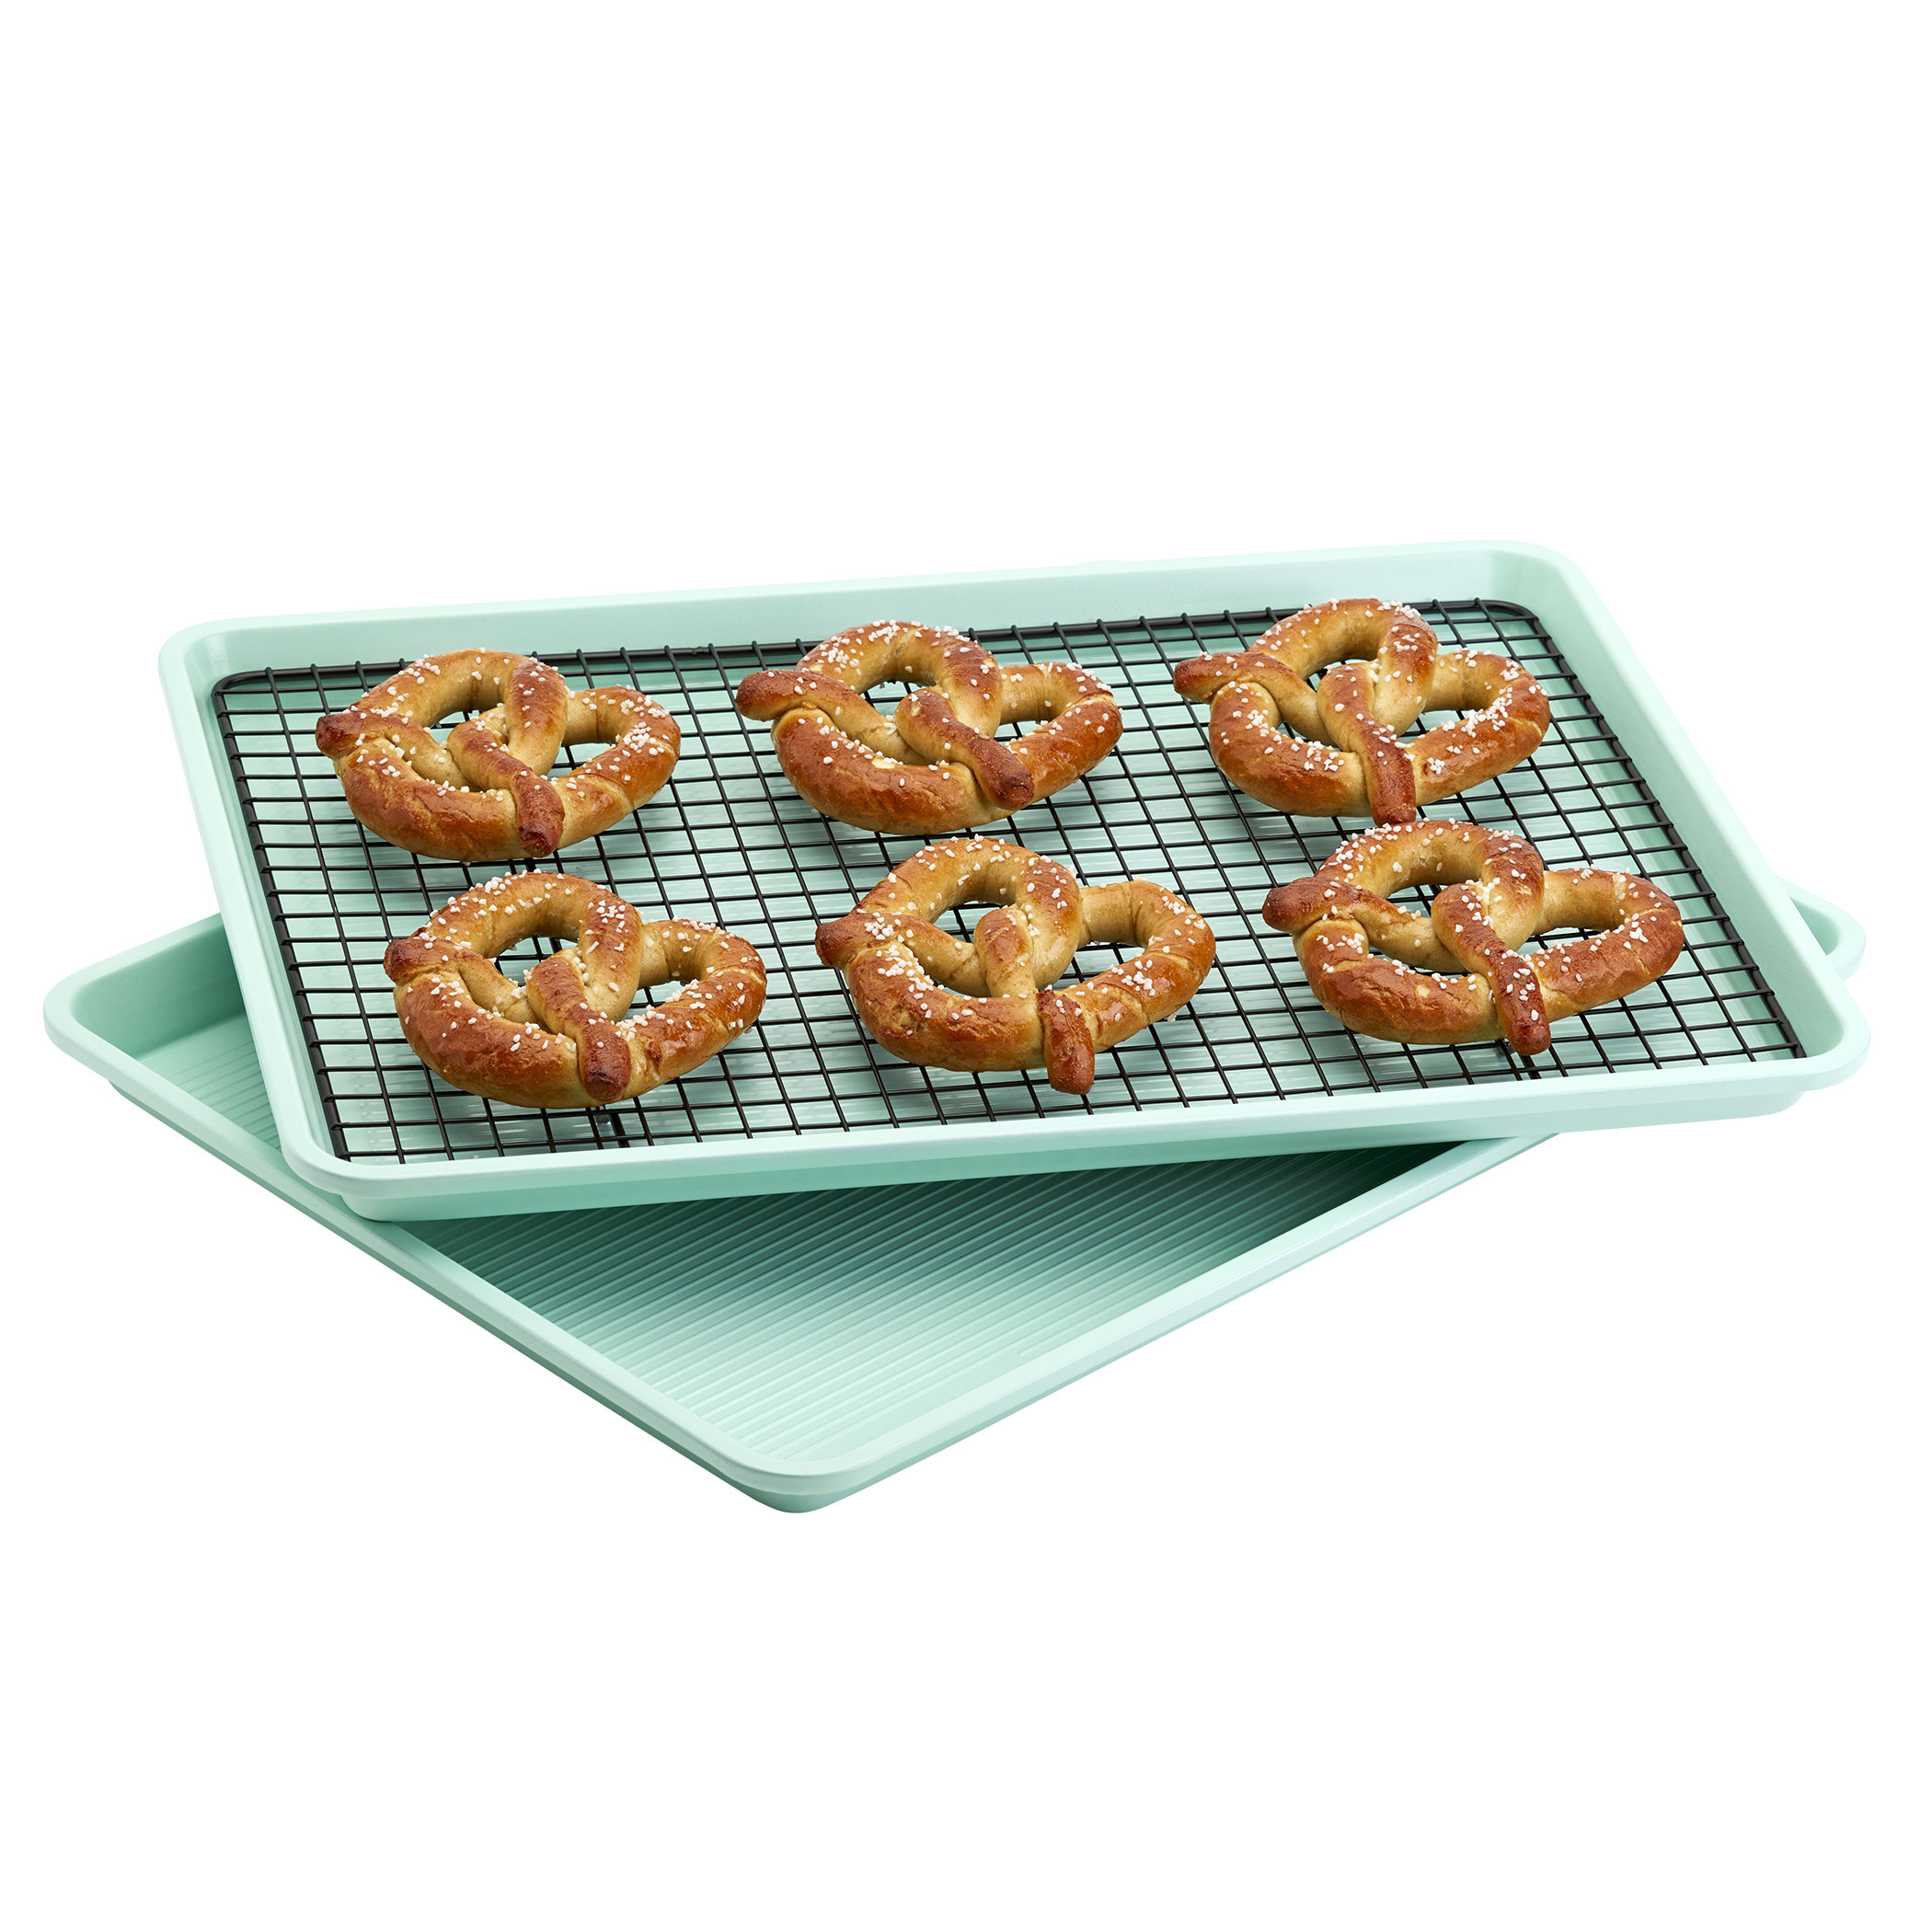 https://assets.wfcdn.com/im/92082596/compr-r85/2460/246069539/frigidaire-cookware-3pc-baking-sheet-set-mint.jpg